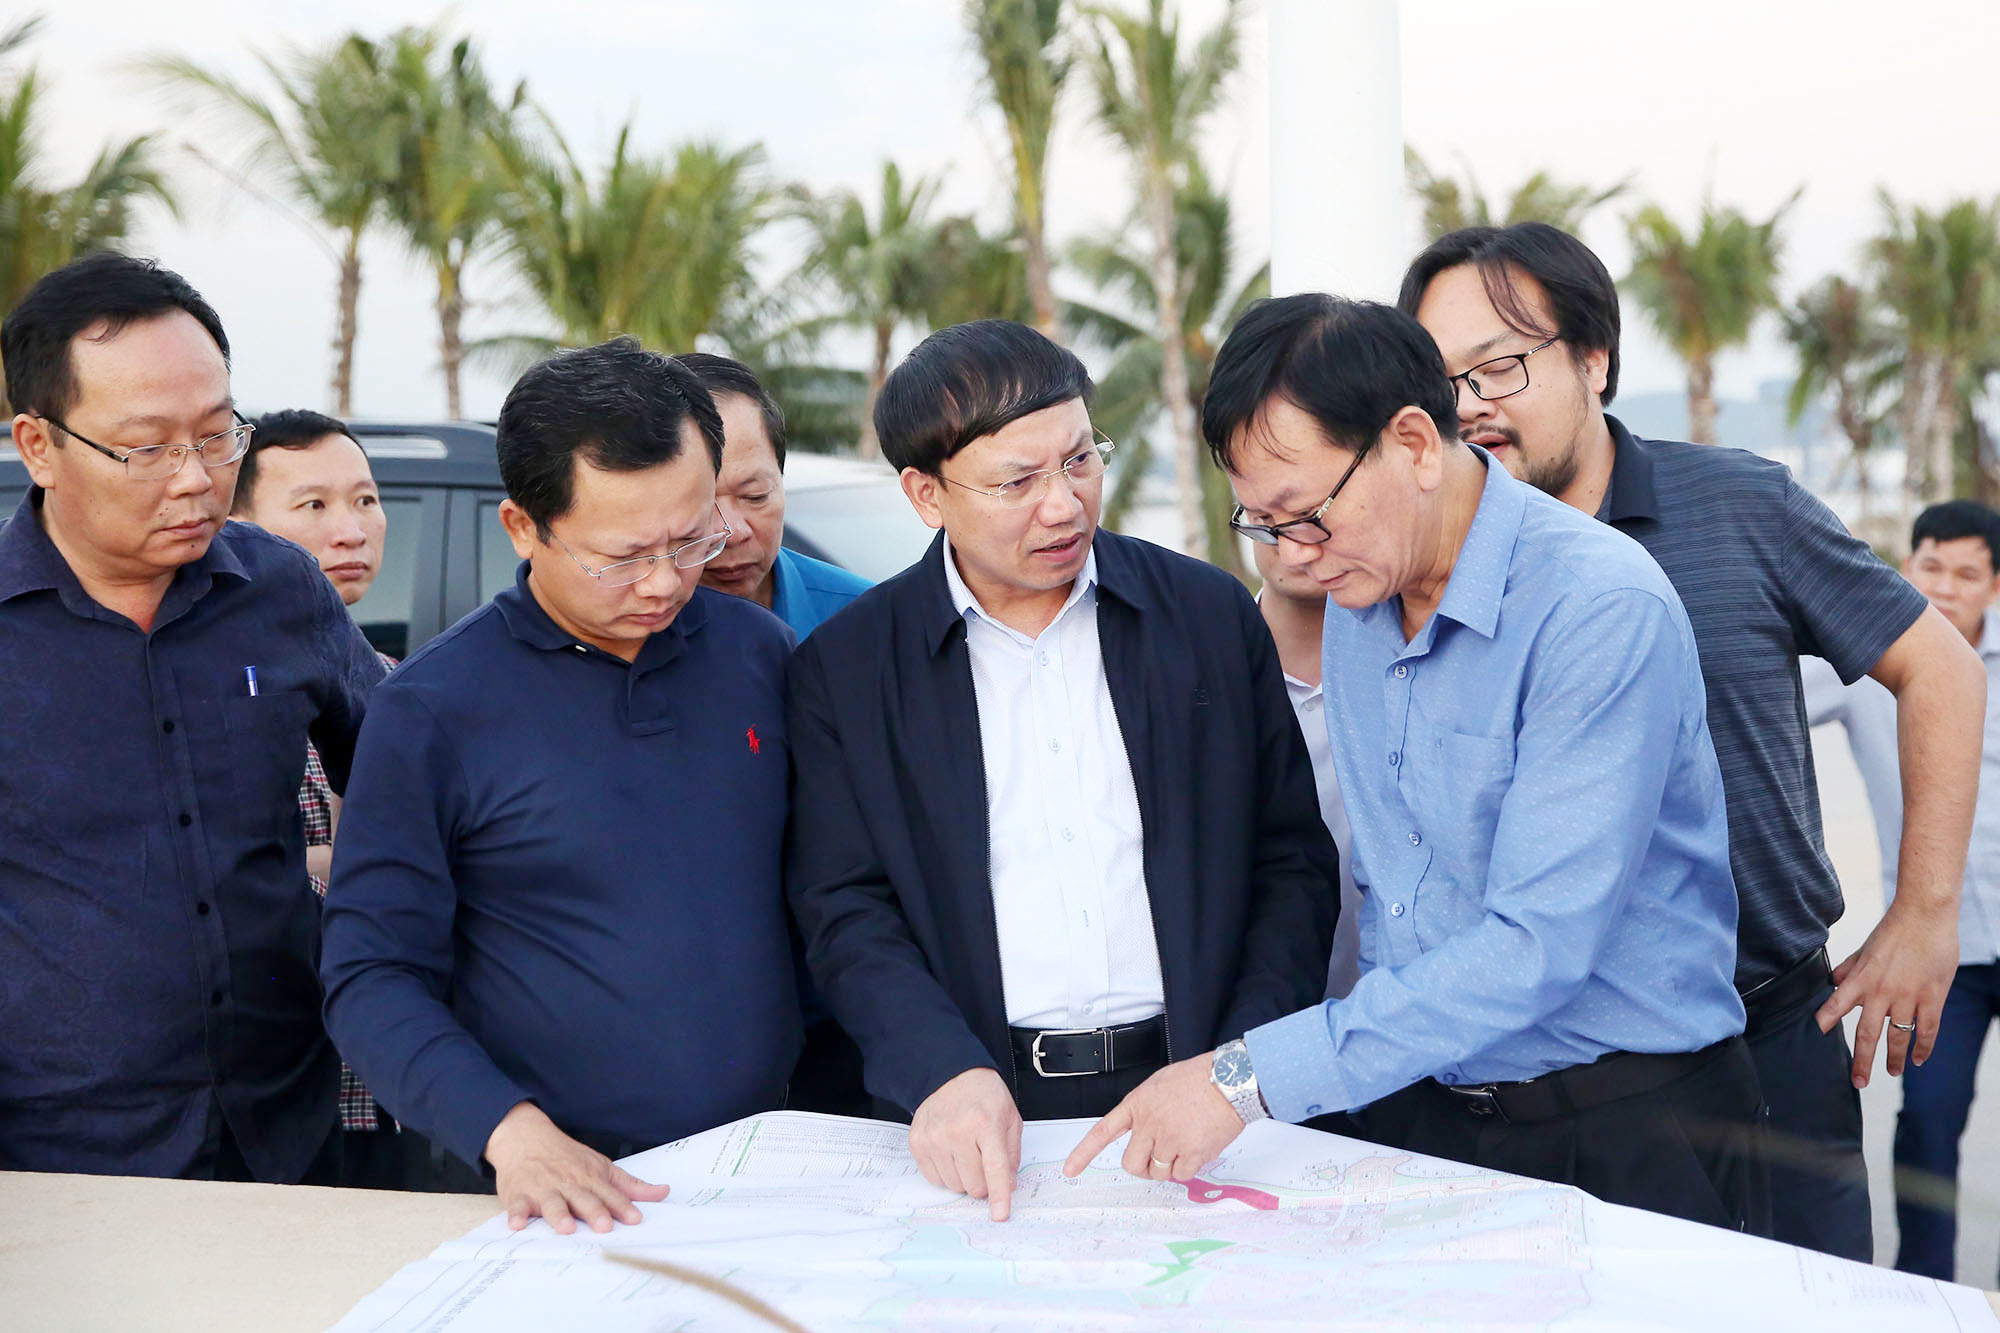 Đồng chí Nguyễn Xuân Ký, Bí thư Tỉnh ủy, Chủ tịch HĐND tỉnh, kiểm tra tiến độ một số hạng mục các dự án trên địa bàn TP Hạ Long, ngày 24/11/2019.